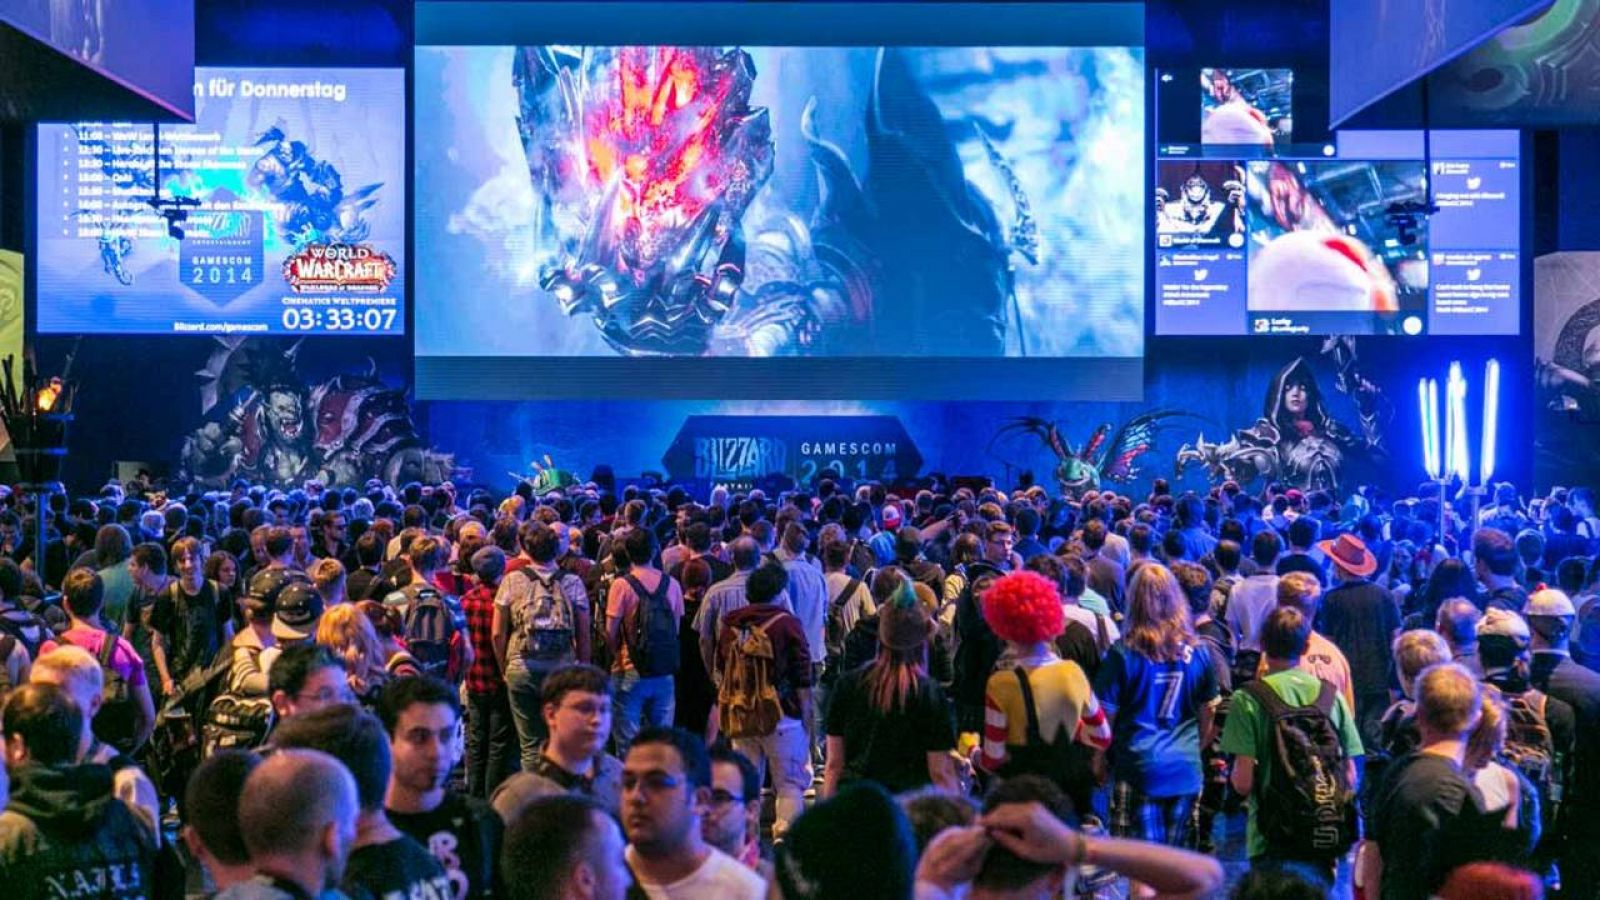 Espacio de exposición de Blizzard en la Gamescom 2014